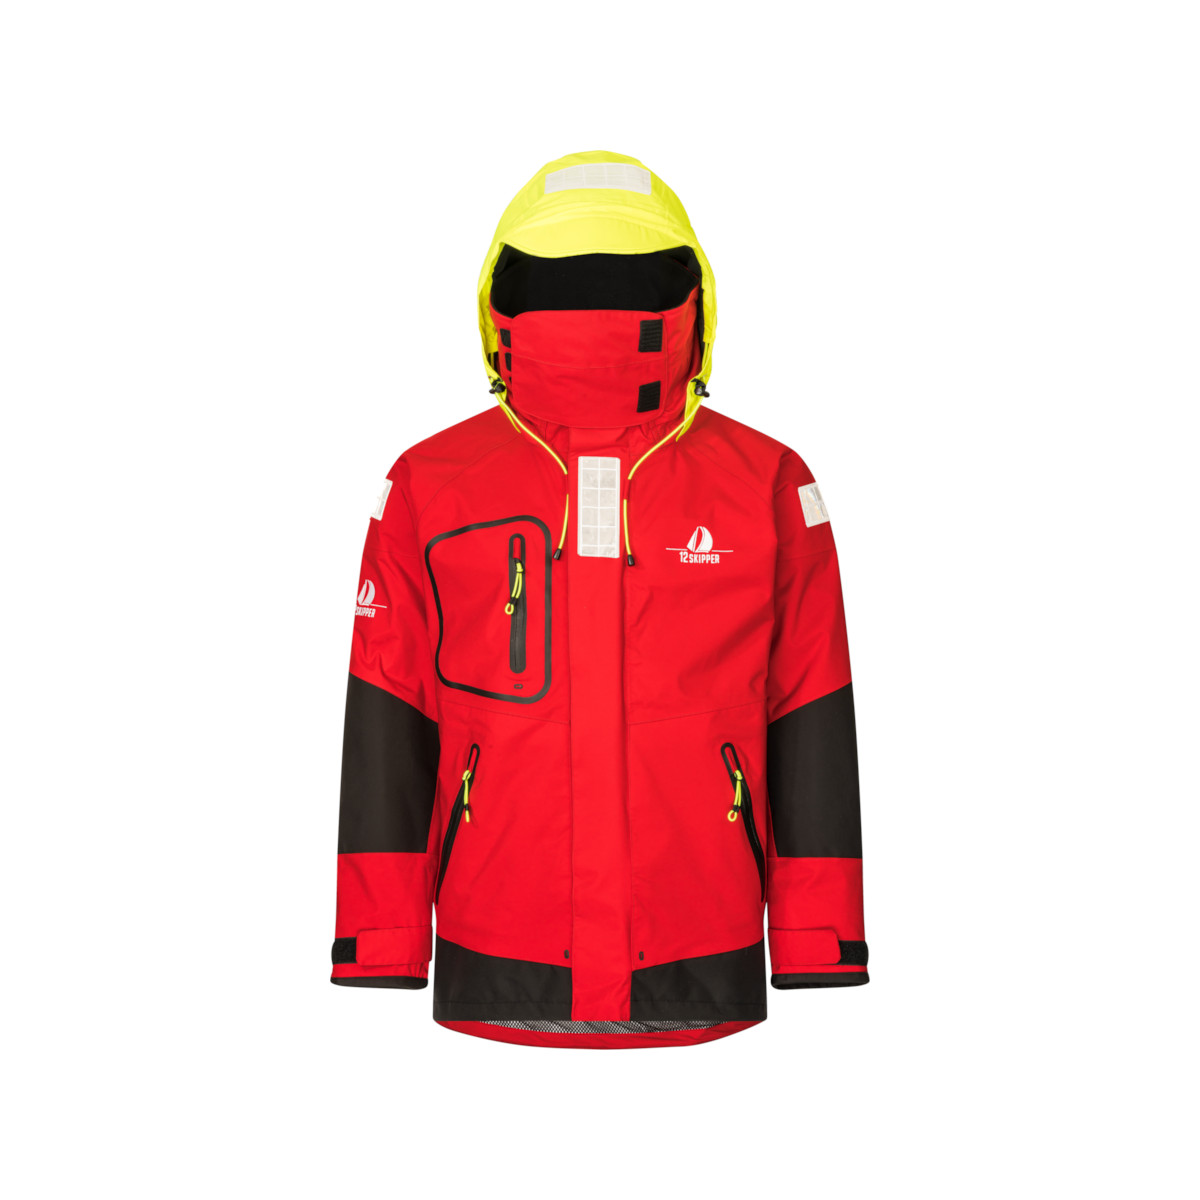 12skipper Magellan veste de quart hauturière, unisexe - rouge, taille L